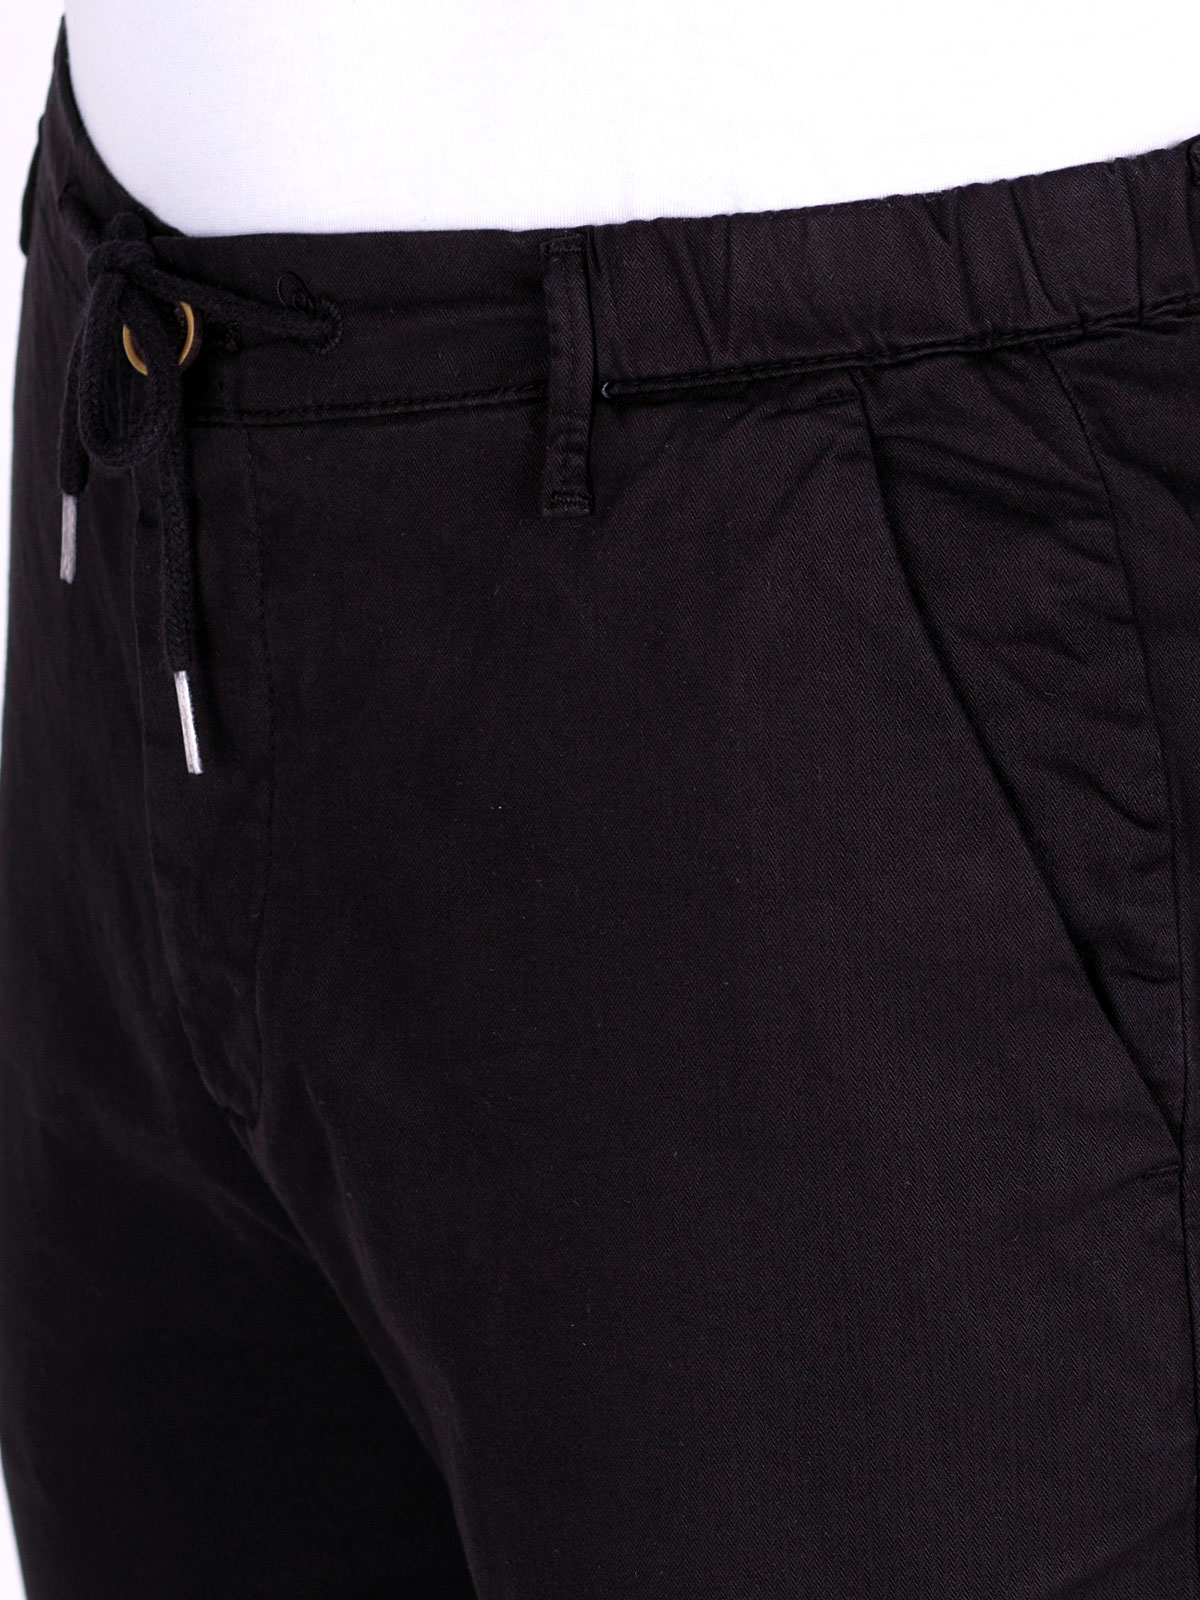 Модерни мъжки панталони  с връзки - 60284 109.00 лв img2